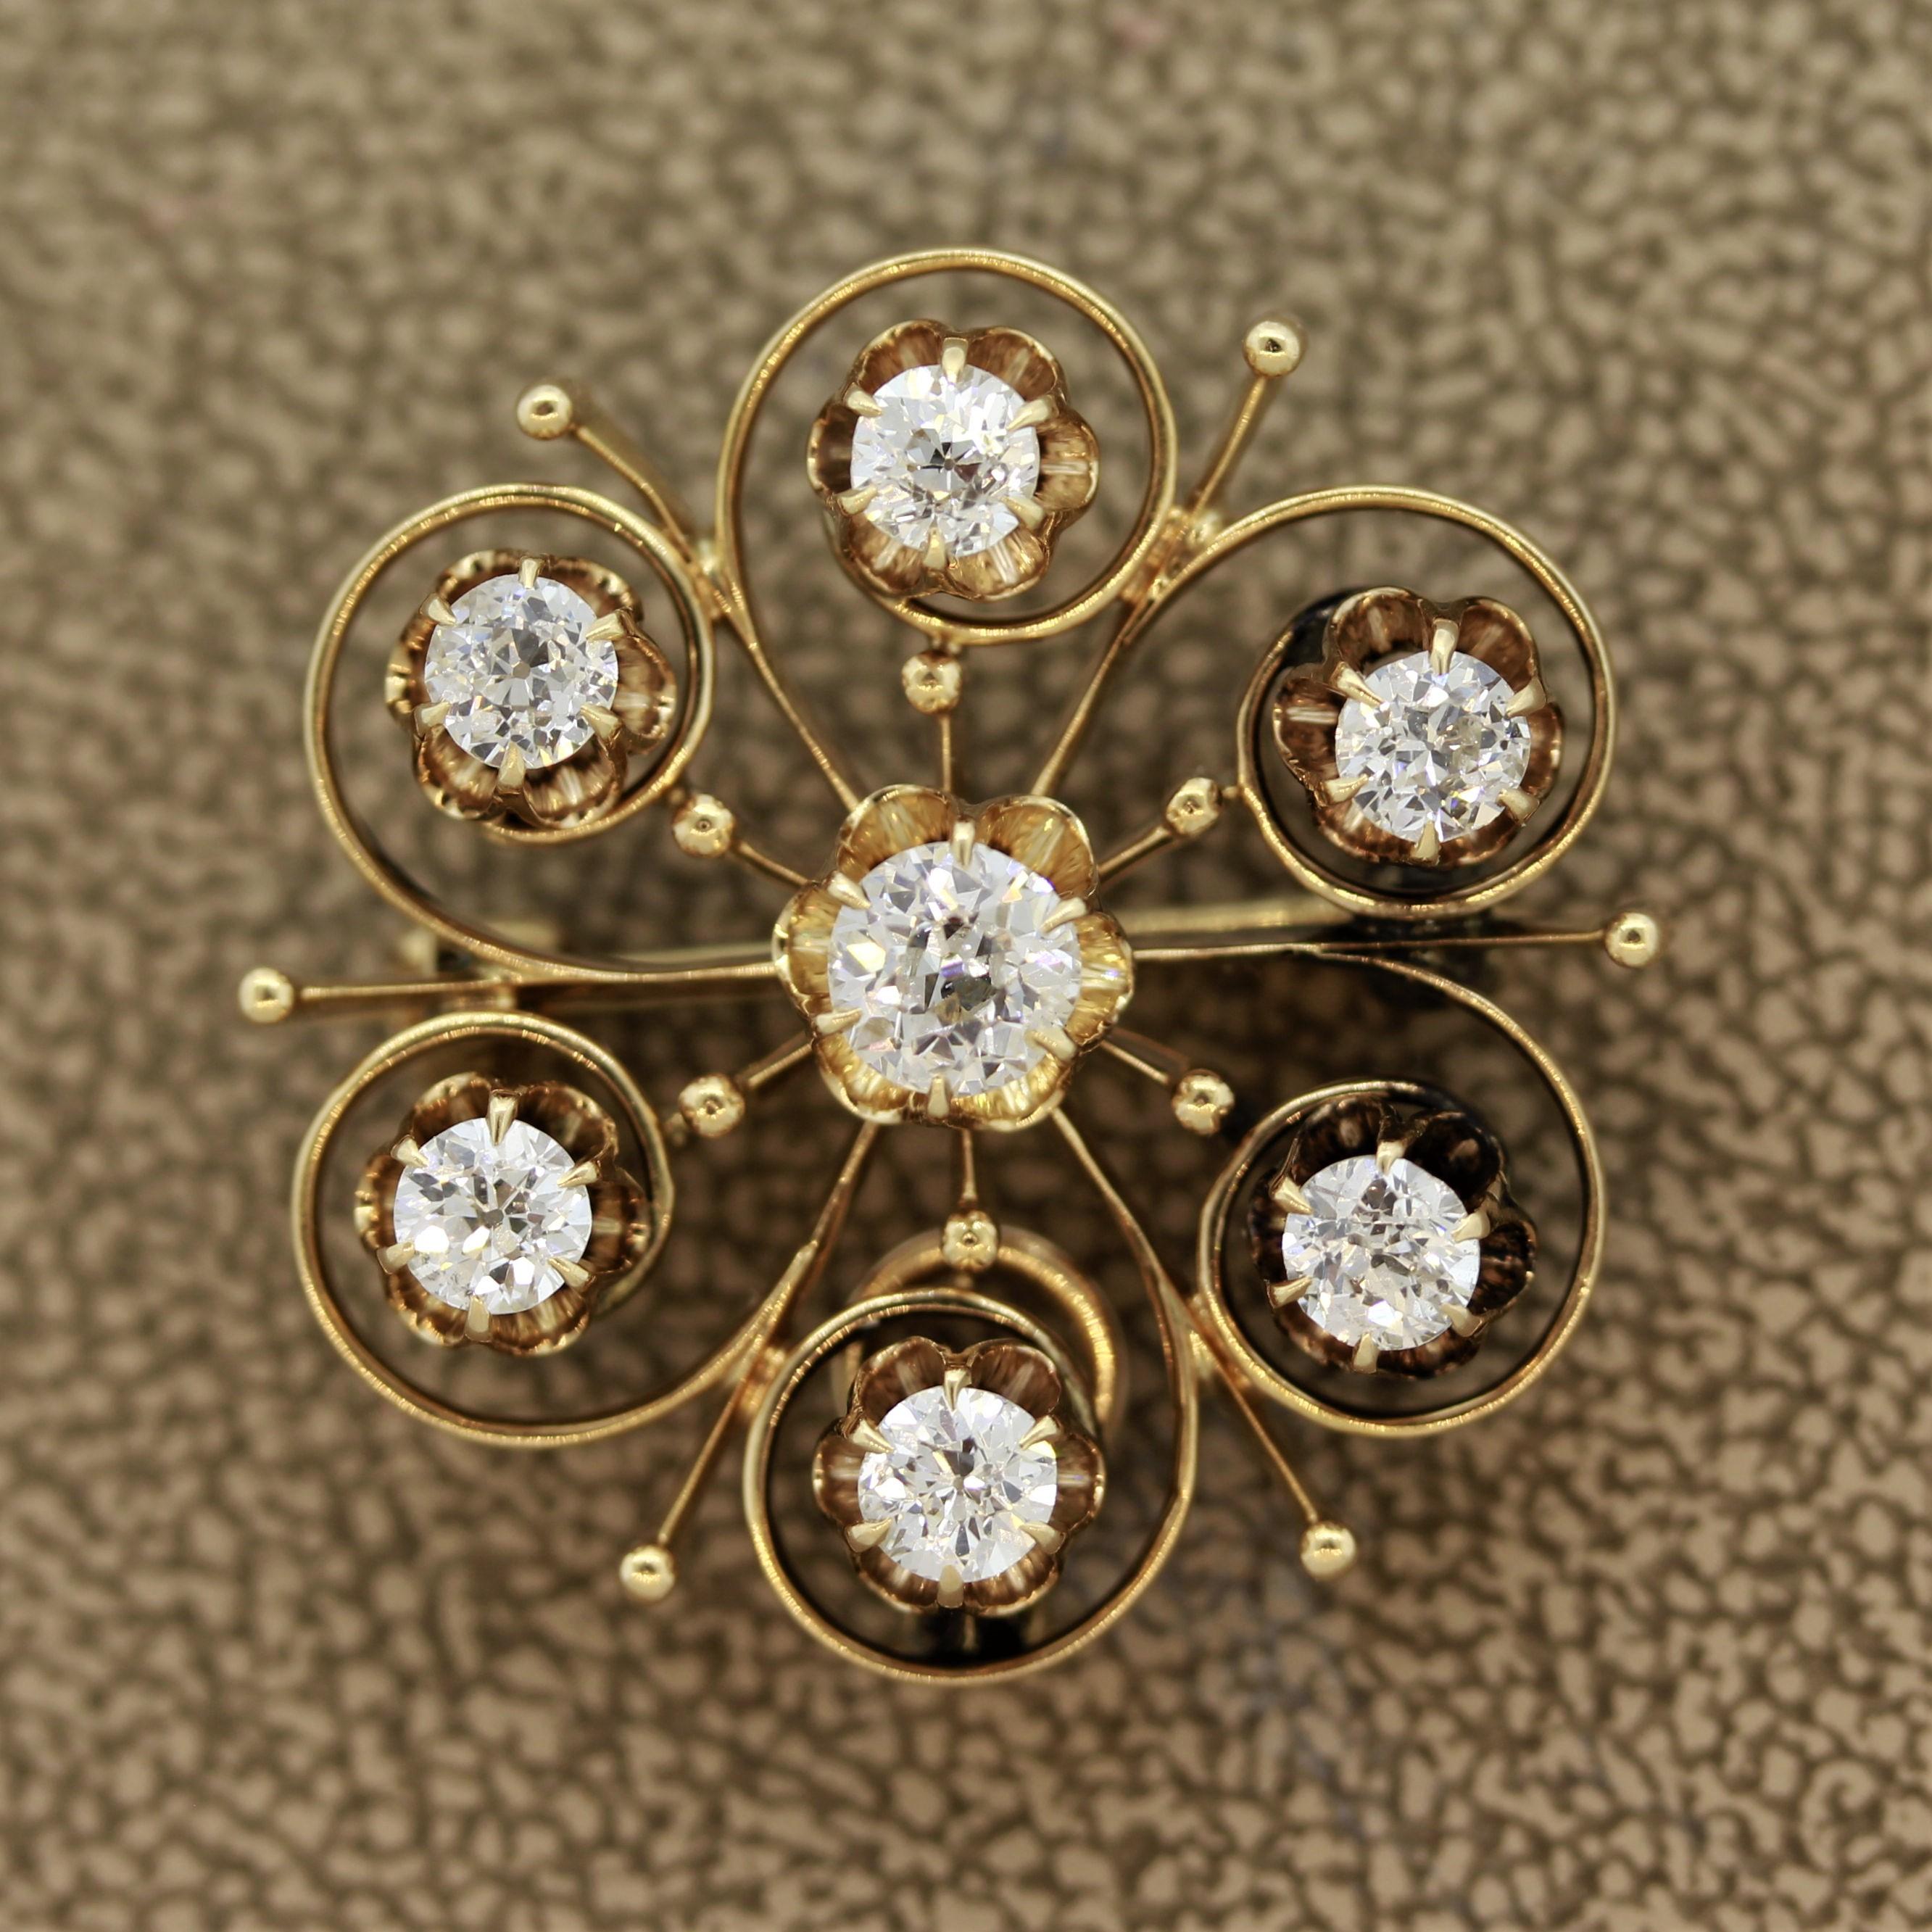 Pièce victorienne classique des années 1890, cette broche étoile est ornée de 7 diamants blancs brillants et pleins de vie. Elles pèsent au total 1,25 carat et sont des pierres de taille européenne. Fabriqué en or 14k et pouvant être porté comme un